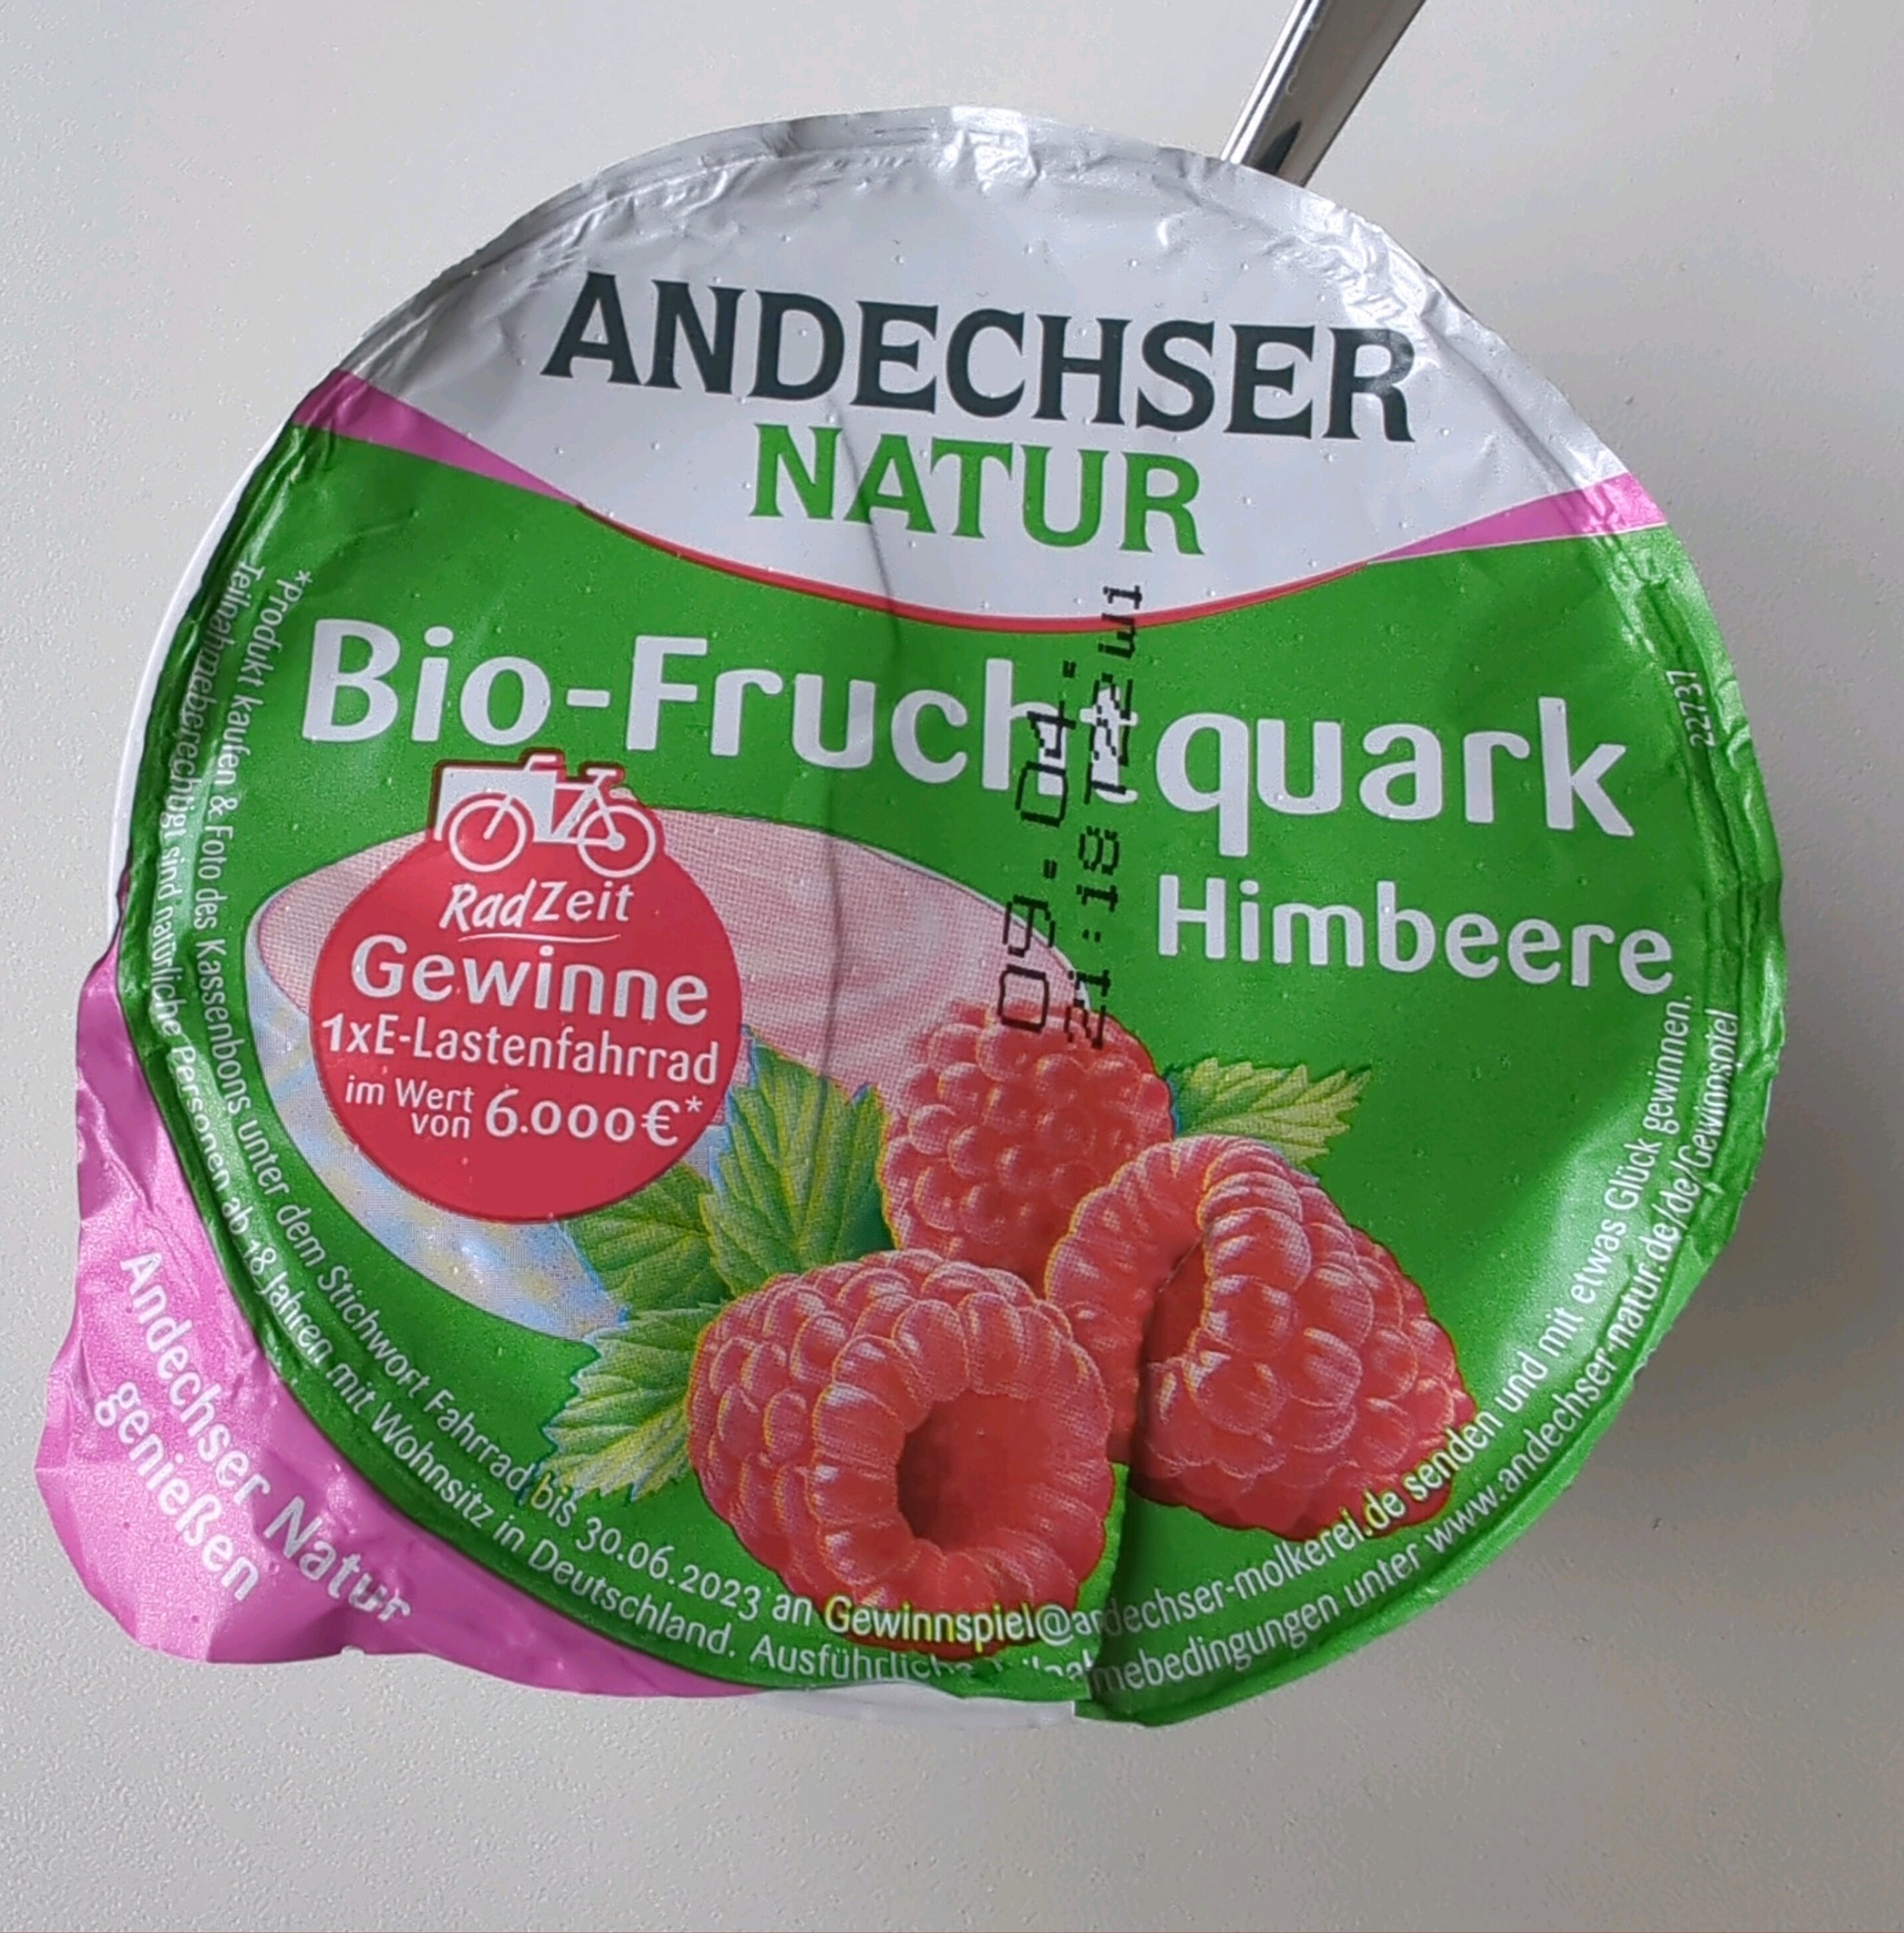 Bio-Fruchtquark - Himbeere - Product